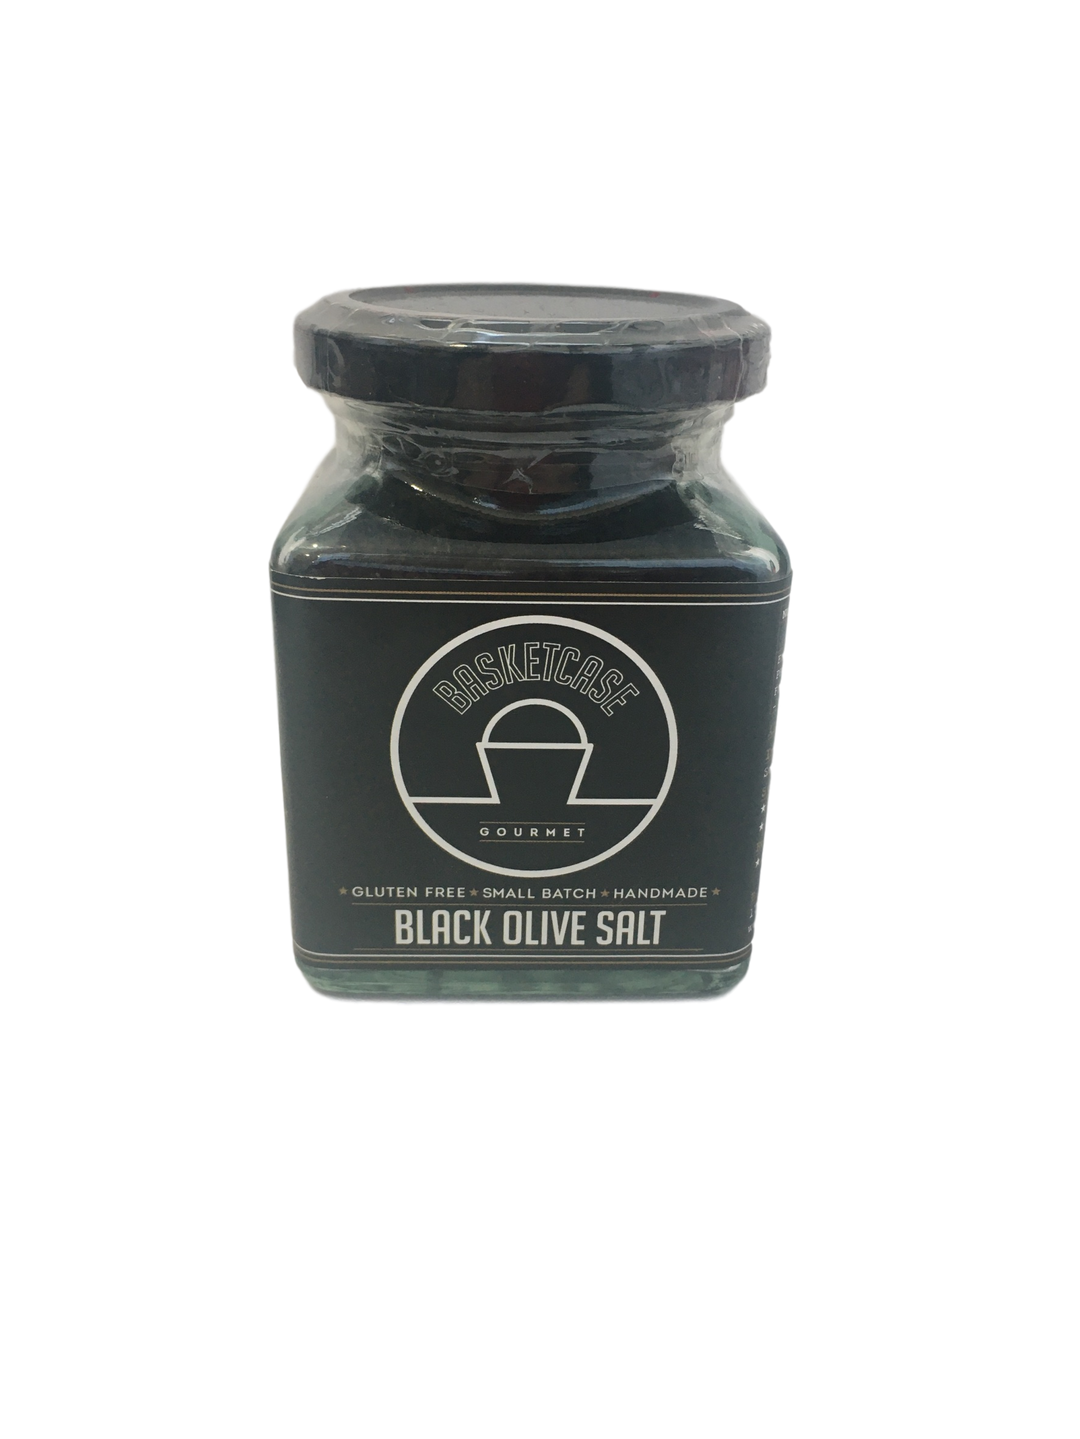 Black Olive Salt by Basketcase Gourmet 190gm